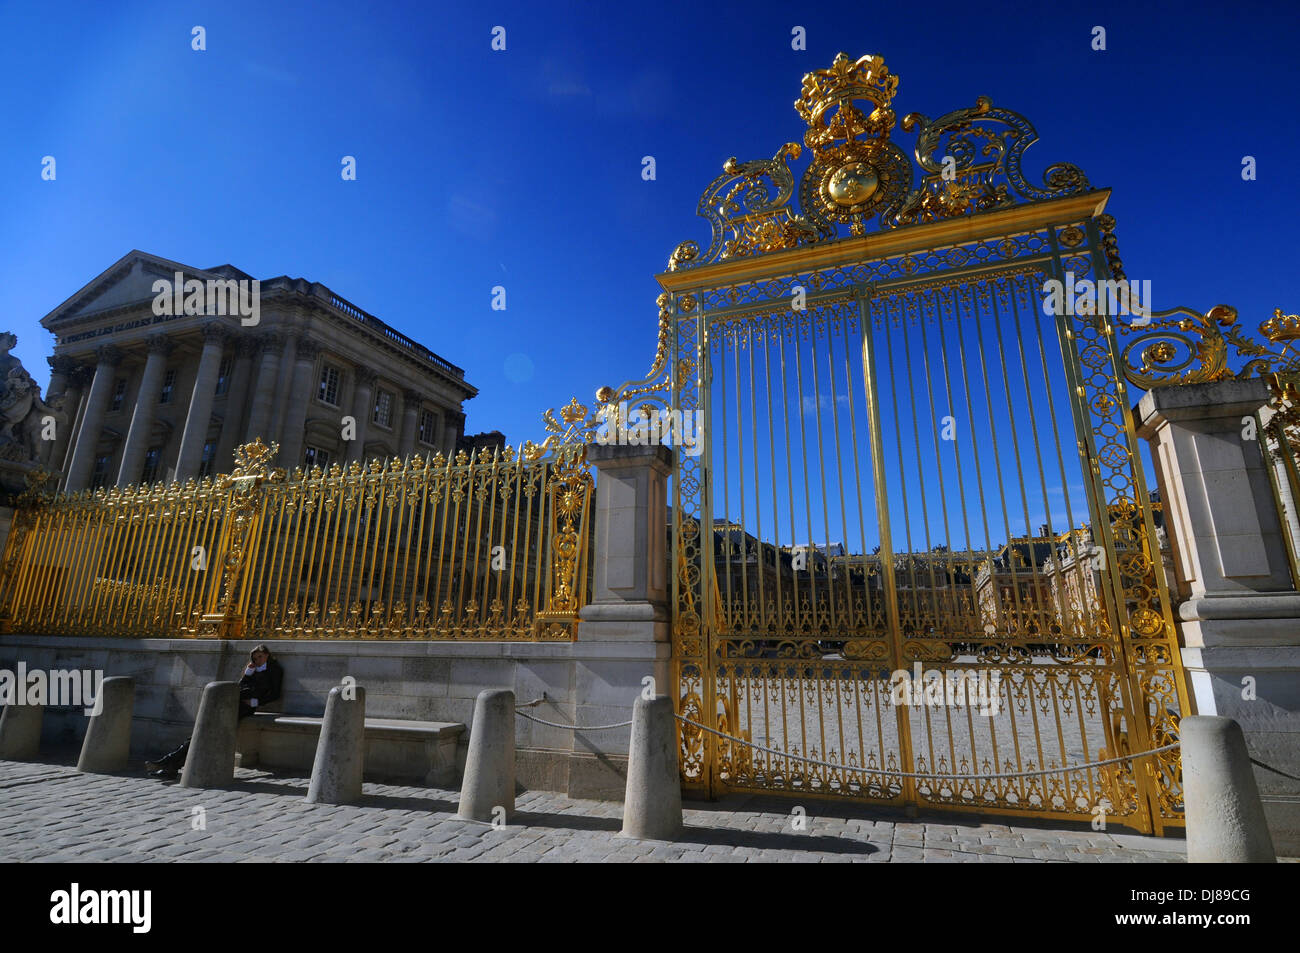 Porte d'or de la maison du roi à Versailles, Paris, France. Pas de monsieur ou PR Banque D'Images